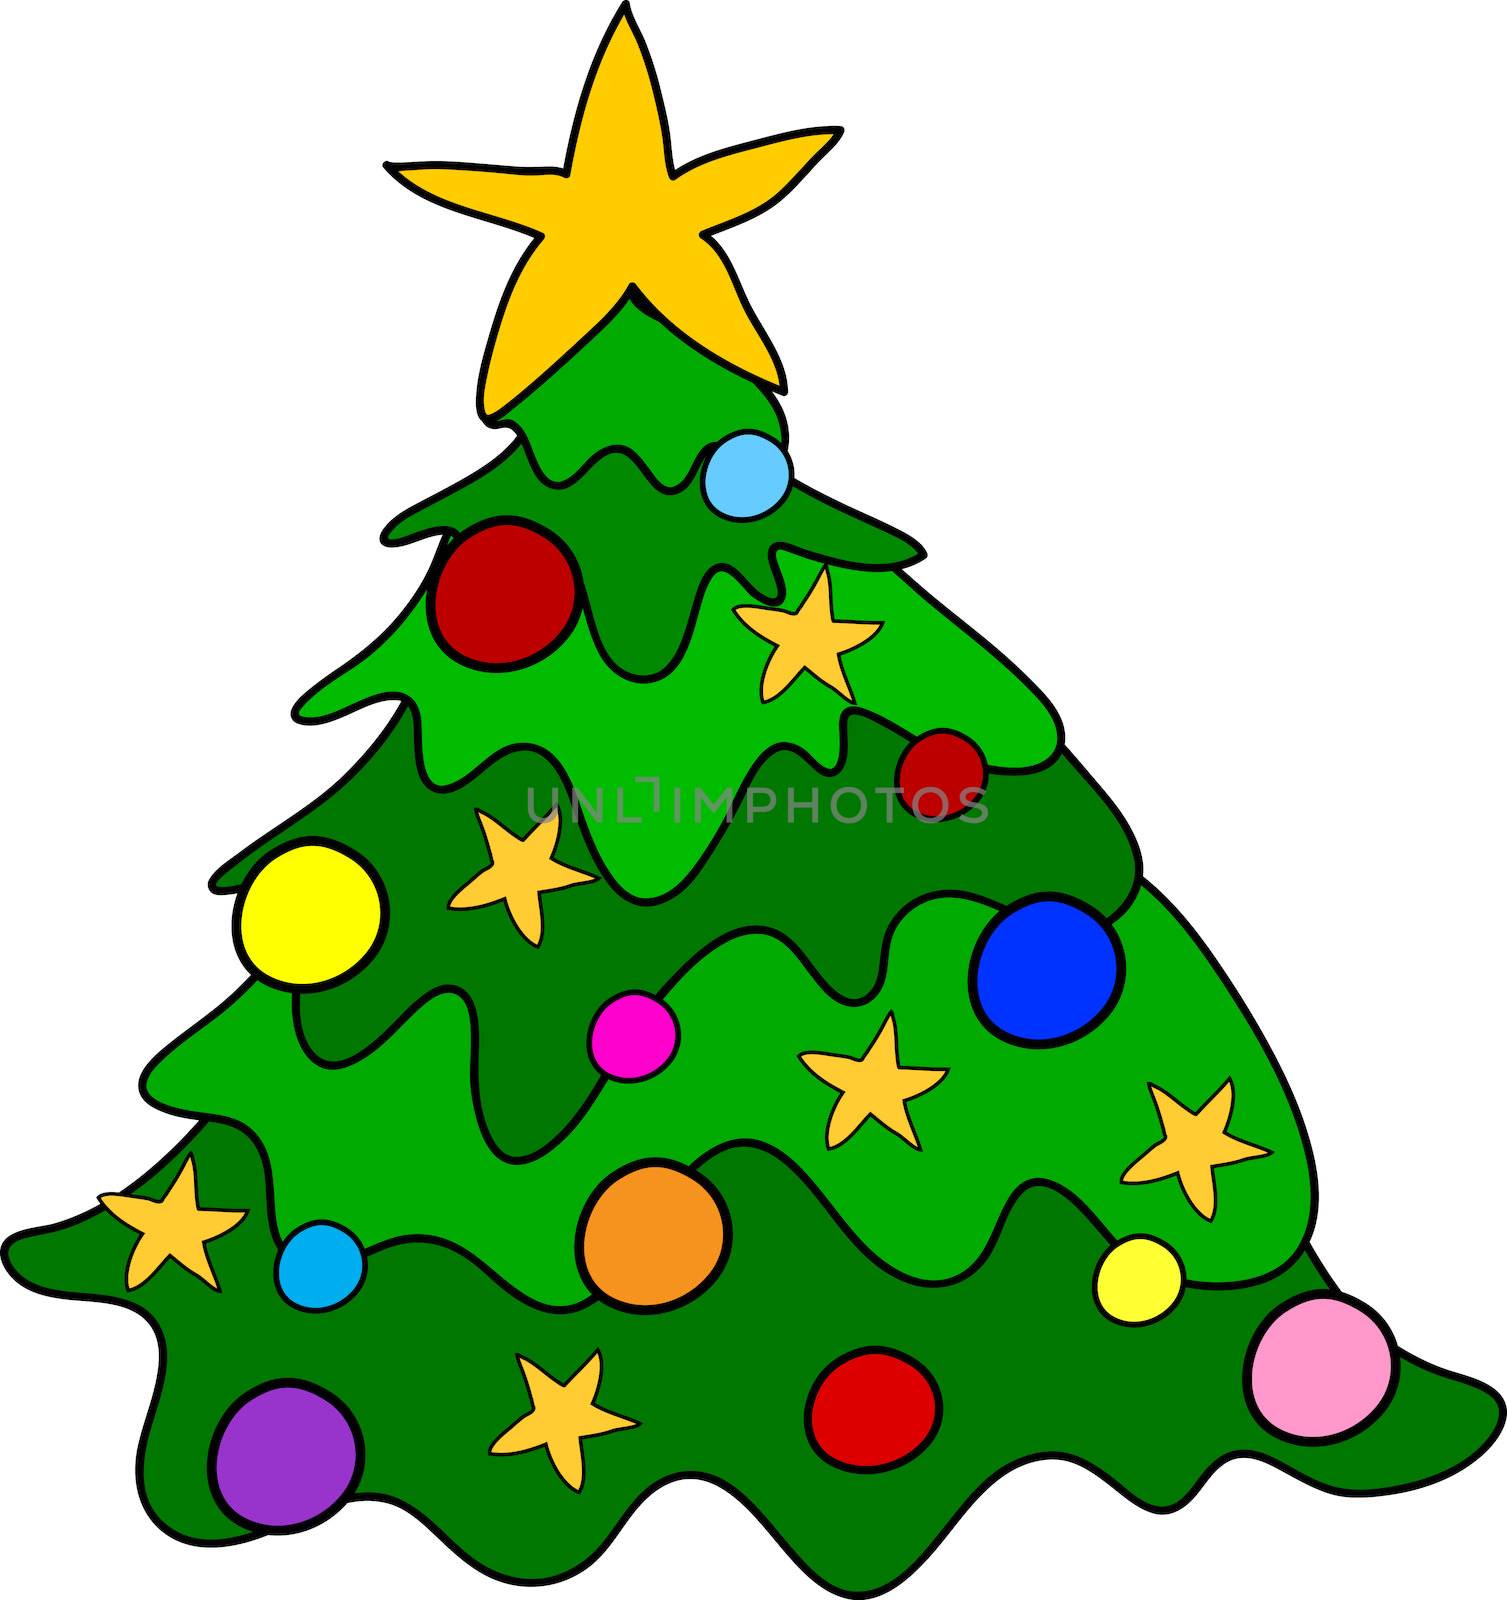 Cartoon christmas tree by peromarketing